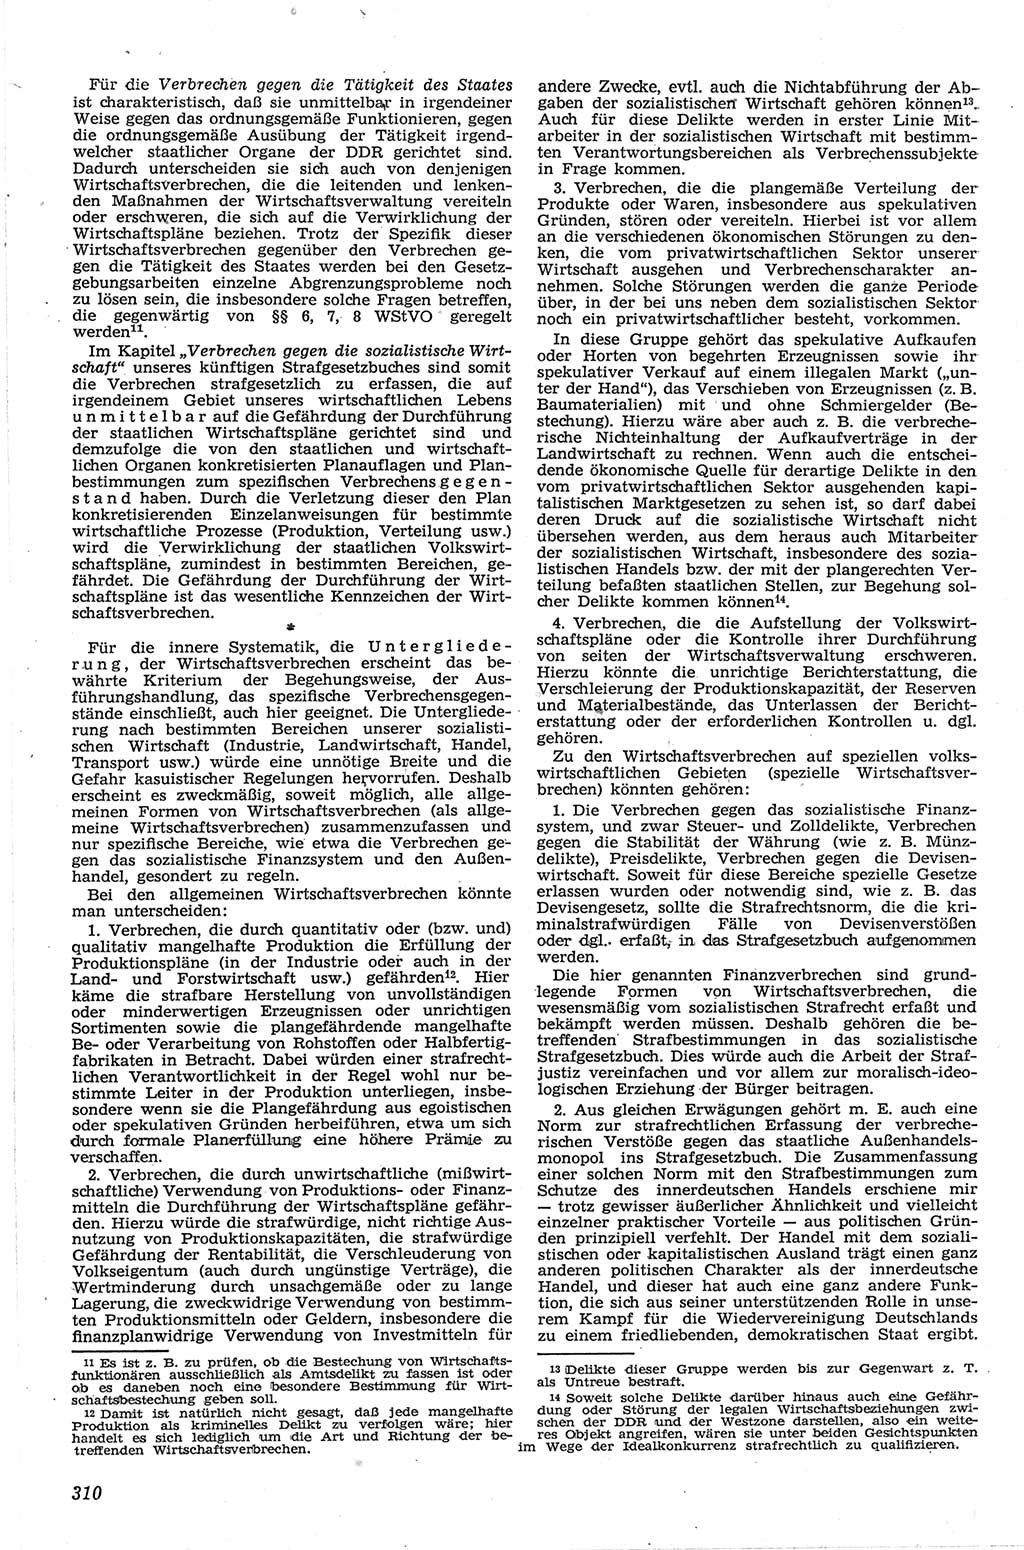 Neue Justiz (NJ), Zeitschrift für Recht und Rechtswissenschaft [Deutsche Demokratische Republik (DDR)], 13. Jahrgang 1959, Seite 310 (NJ DDR 1959, S. 310)